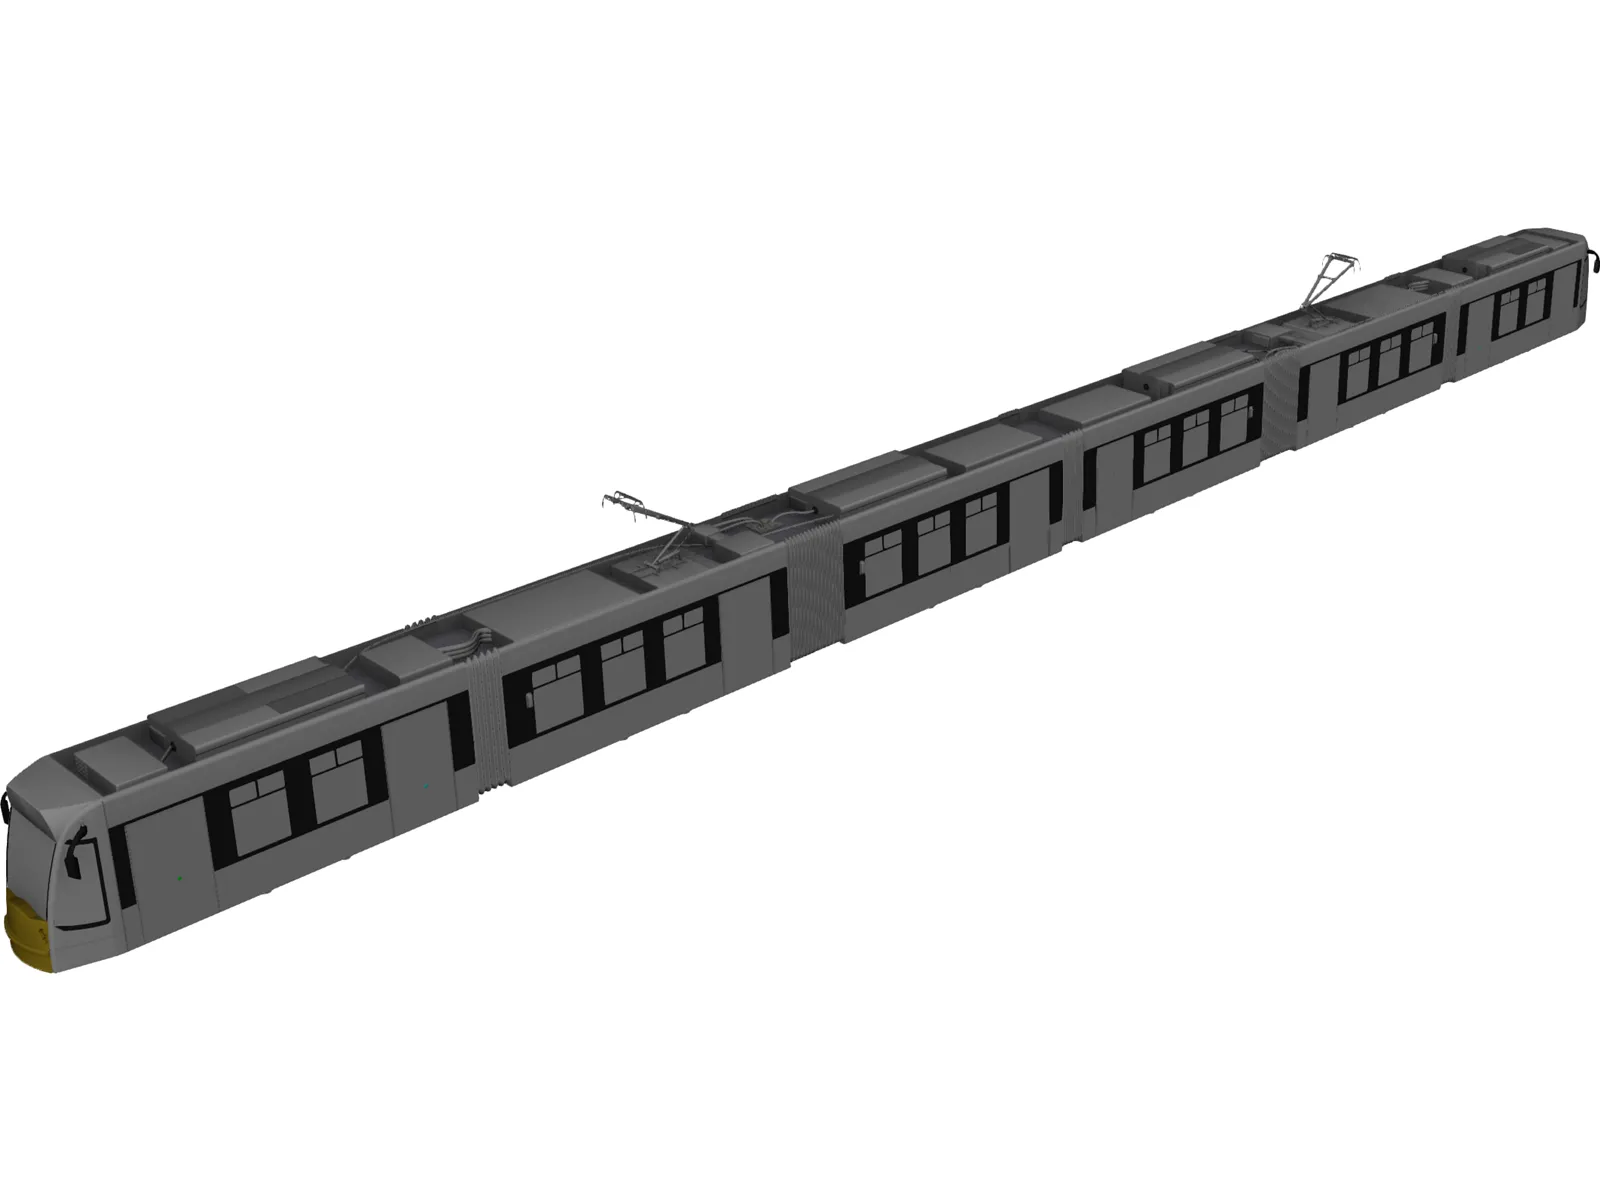 Train CAD Model - 3DCADBrowser